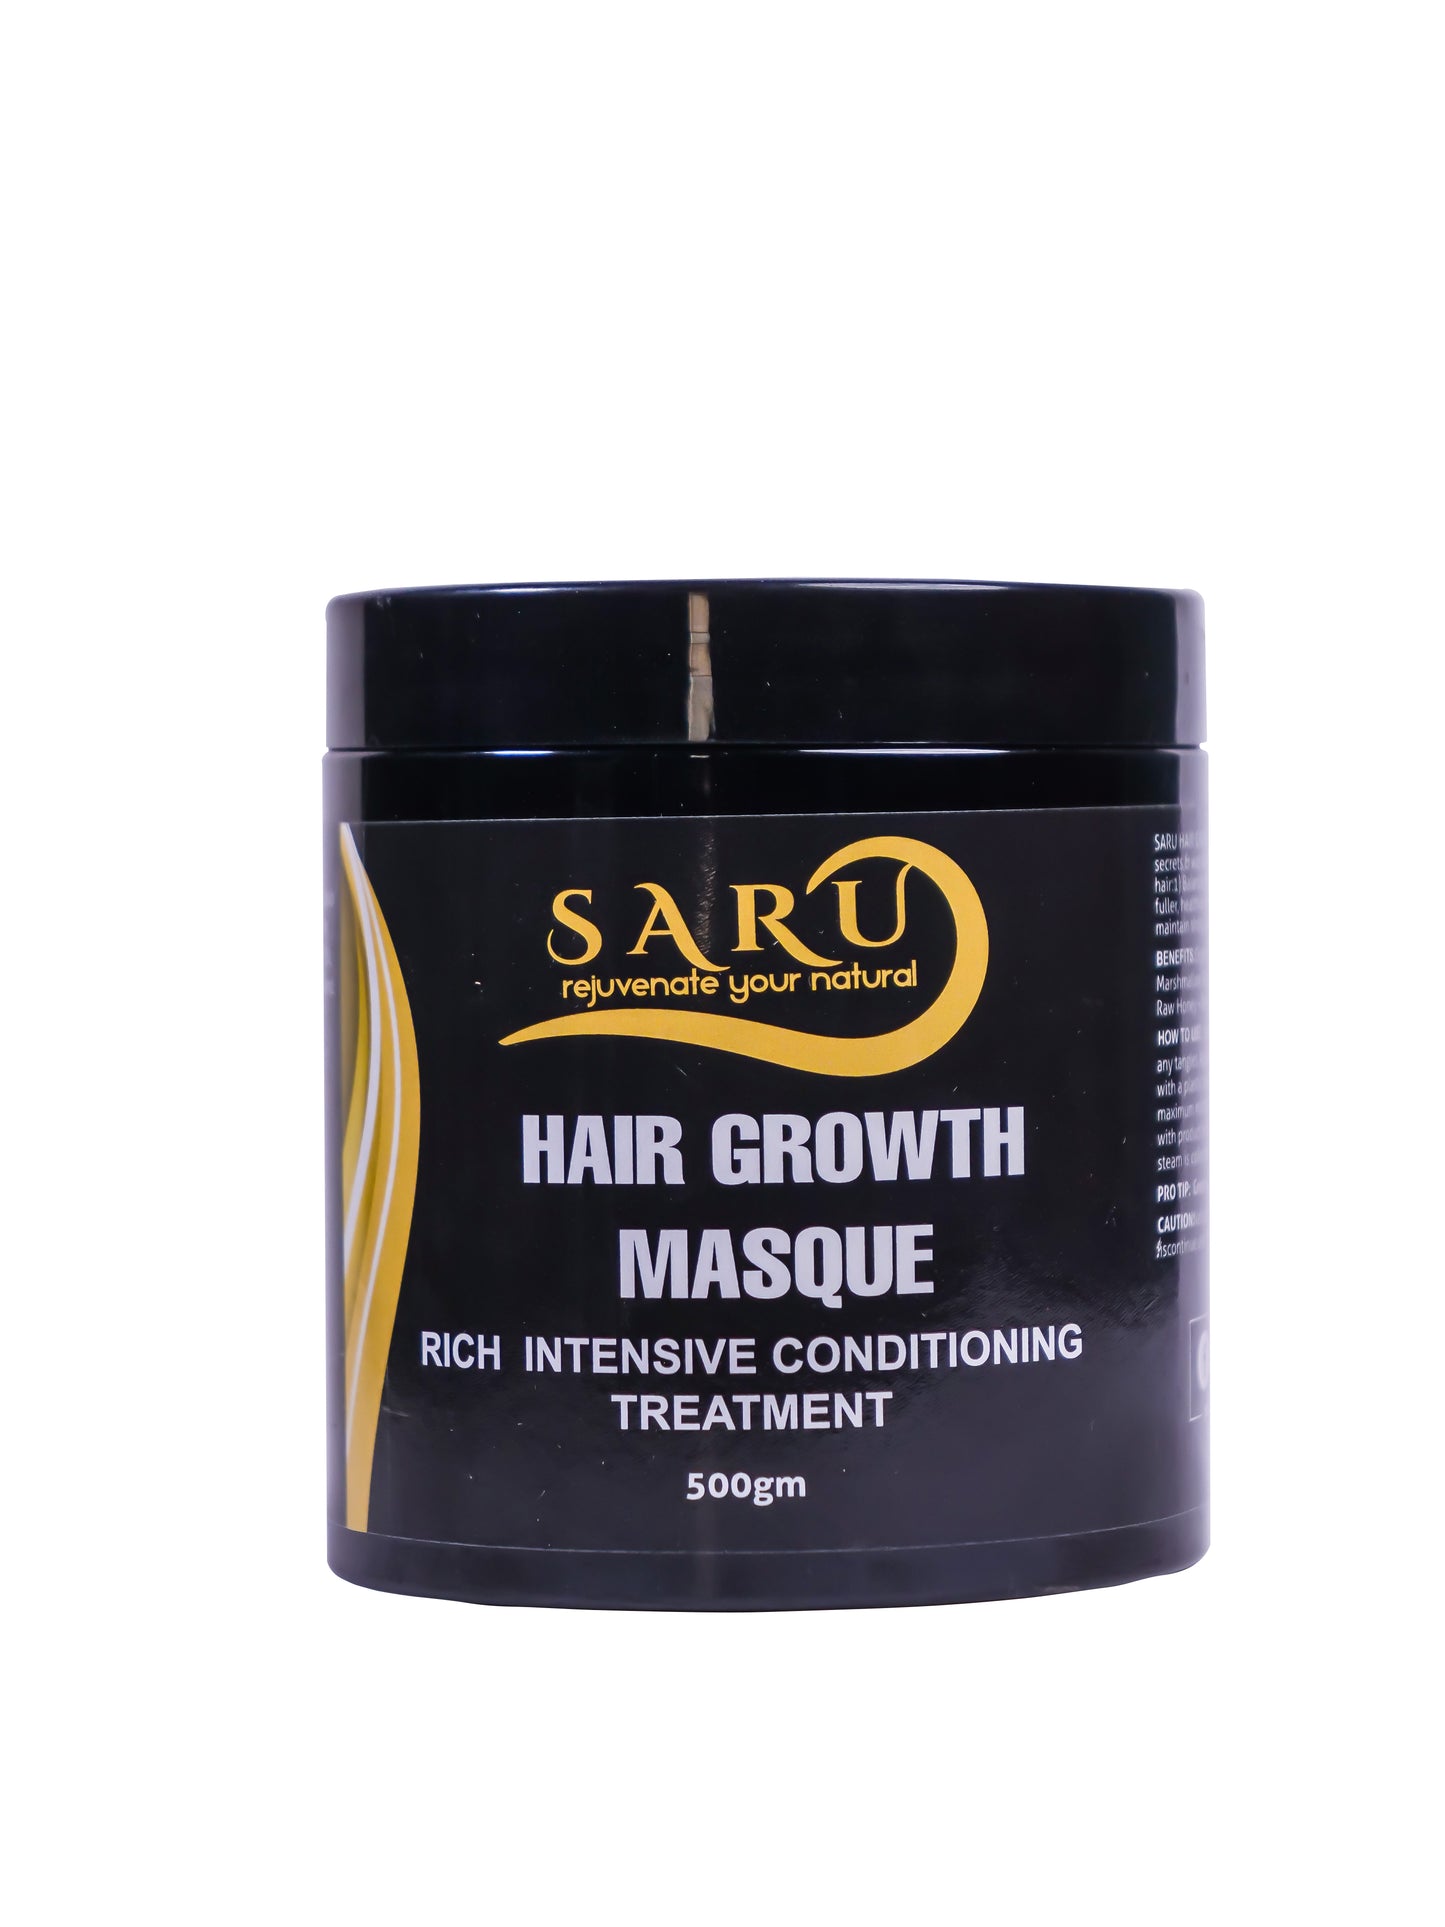 HAIR GROWTH MASQUE (500gm)